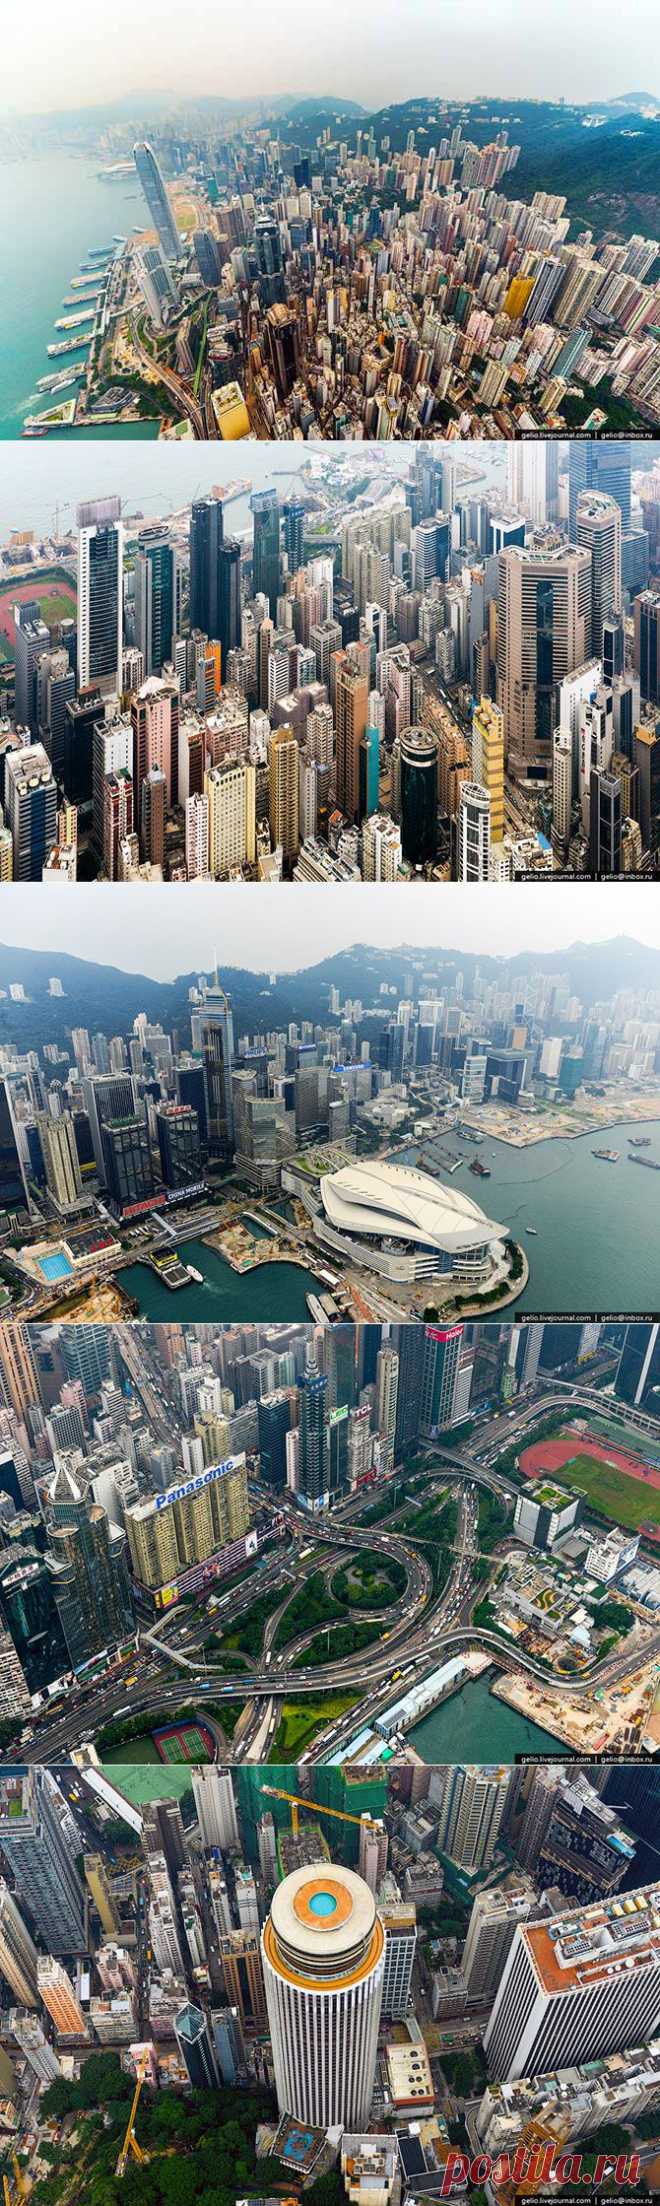 Гонконг – специальный административный район Китая. Является одним из крупнейших деловых центров Азии и мира, в котором построено почти 8000 высотных зданий, в том числе более 1300 небоскрёбов. В рейтинге городов мира с высотной застройкой Гонконг занимает первое место, c большим отрывом опережая Нью-Йорк, Сингапур, Чикаго и Дубай. Высочайшим зданием Гонконга является 118-этажный Международный коммерческий центр.